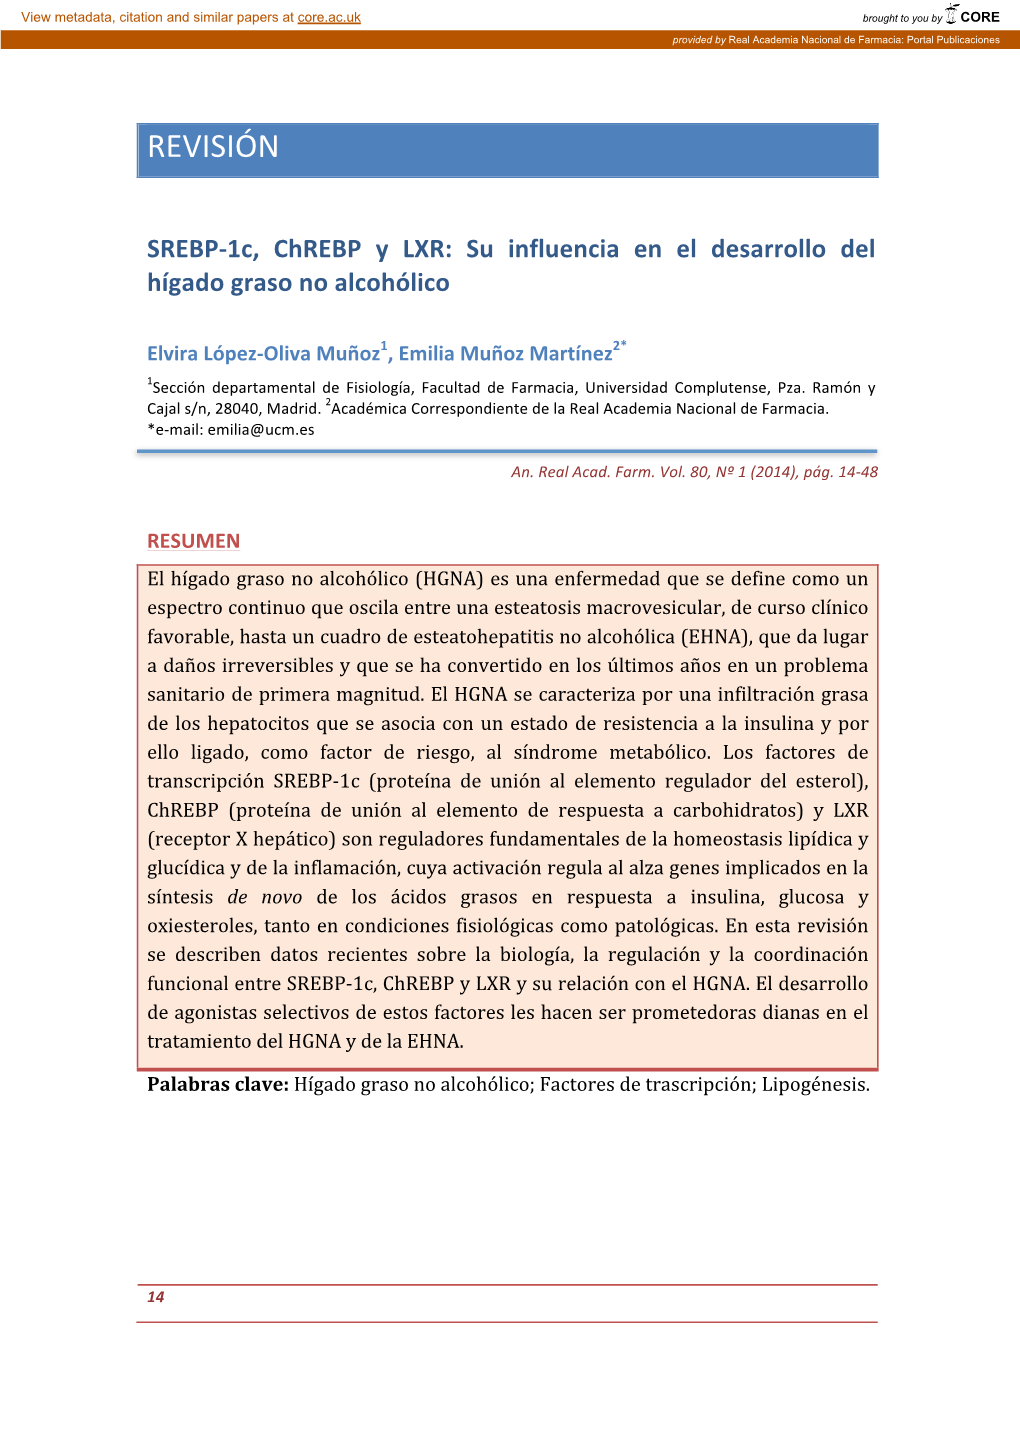 SREBP-1C, Chrebp Y LXR: Su Influencia En El Desarrollo Del Hígado Graso No Alcohólico